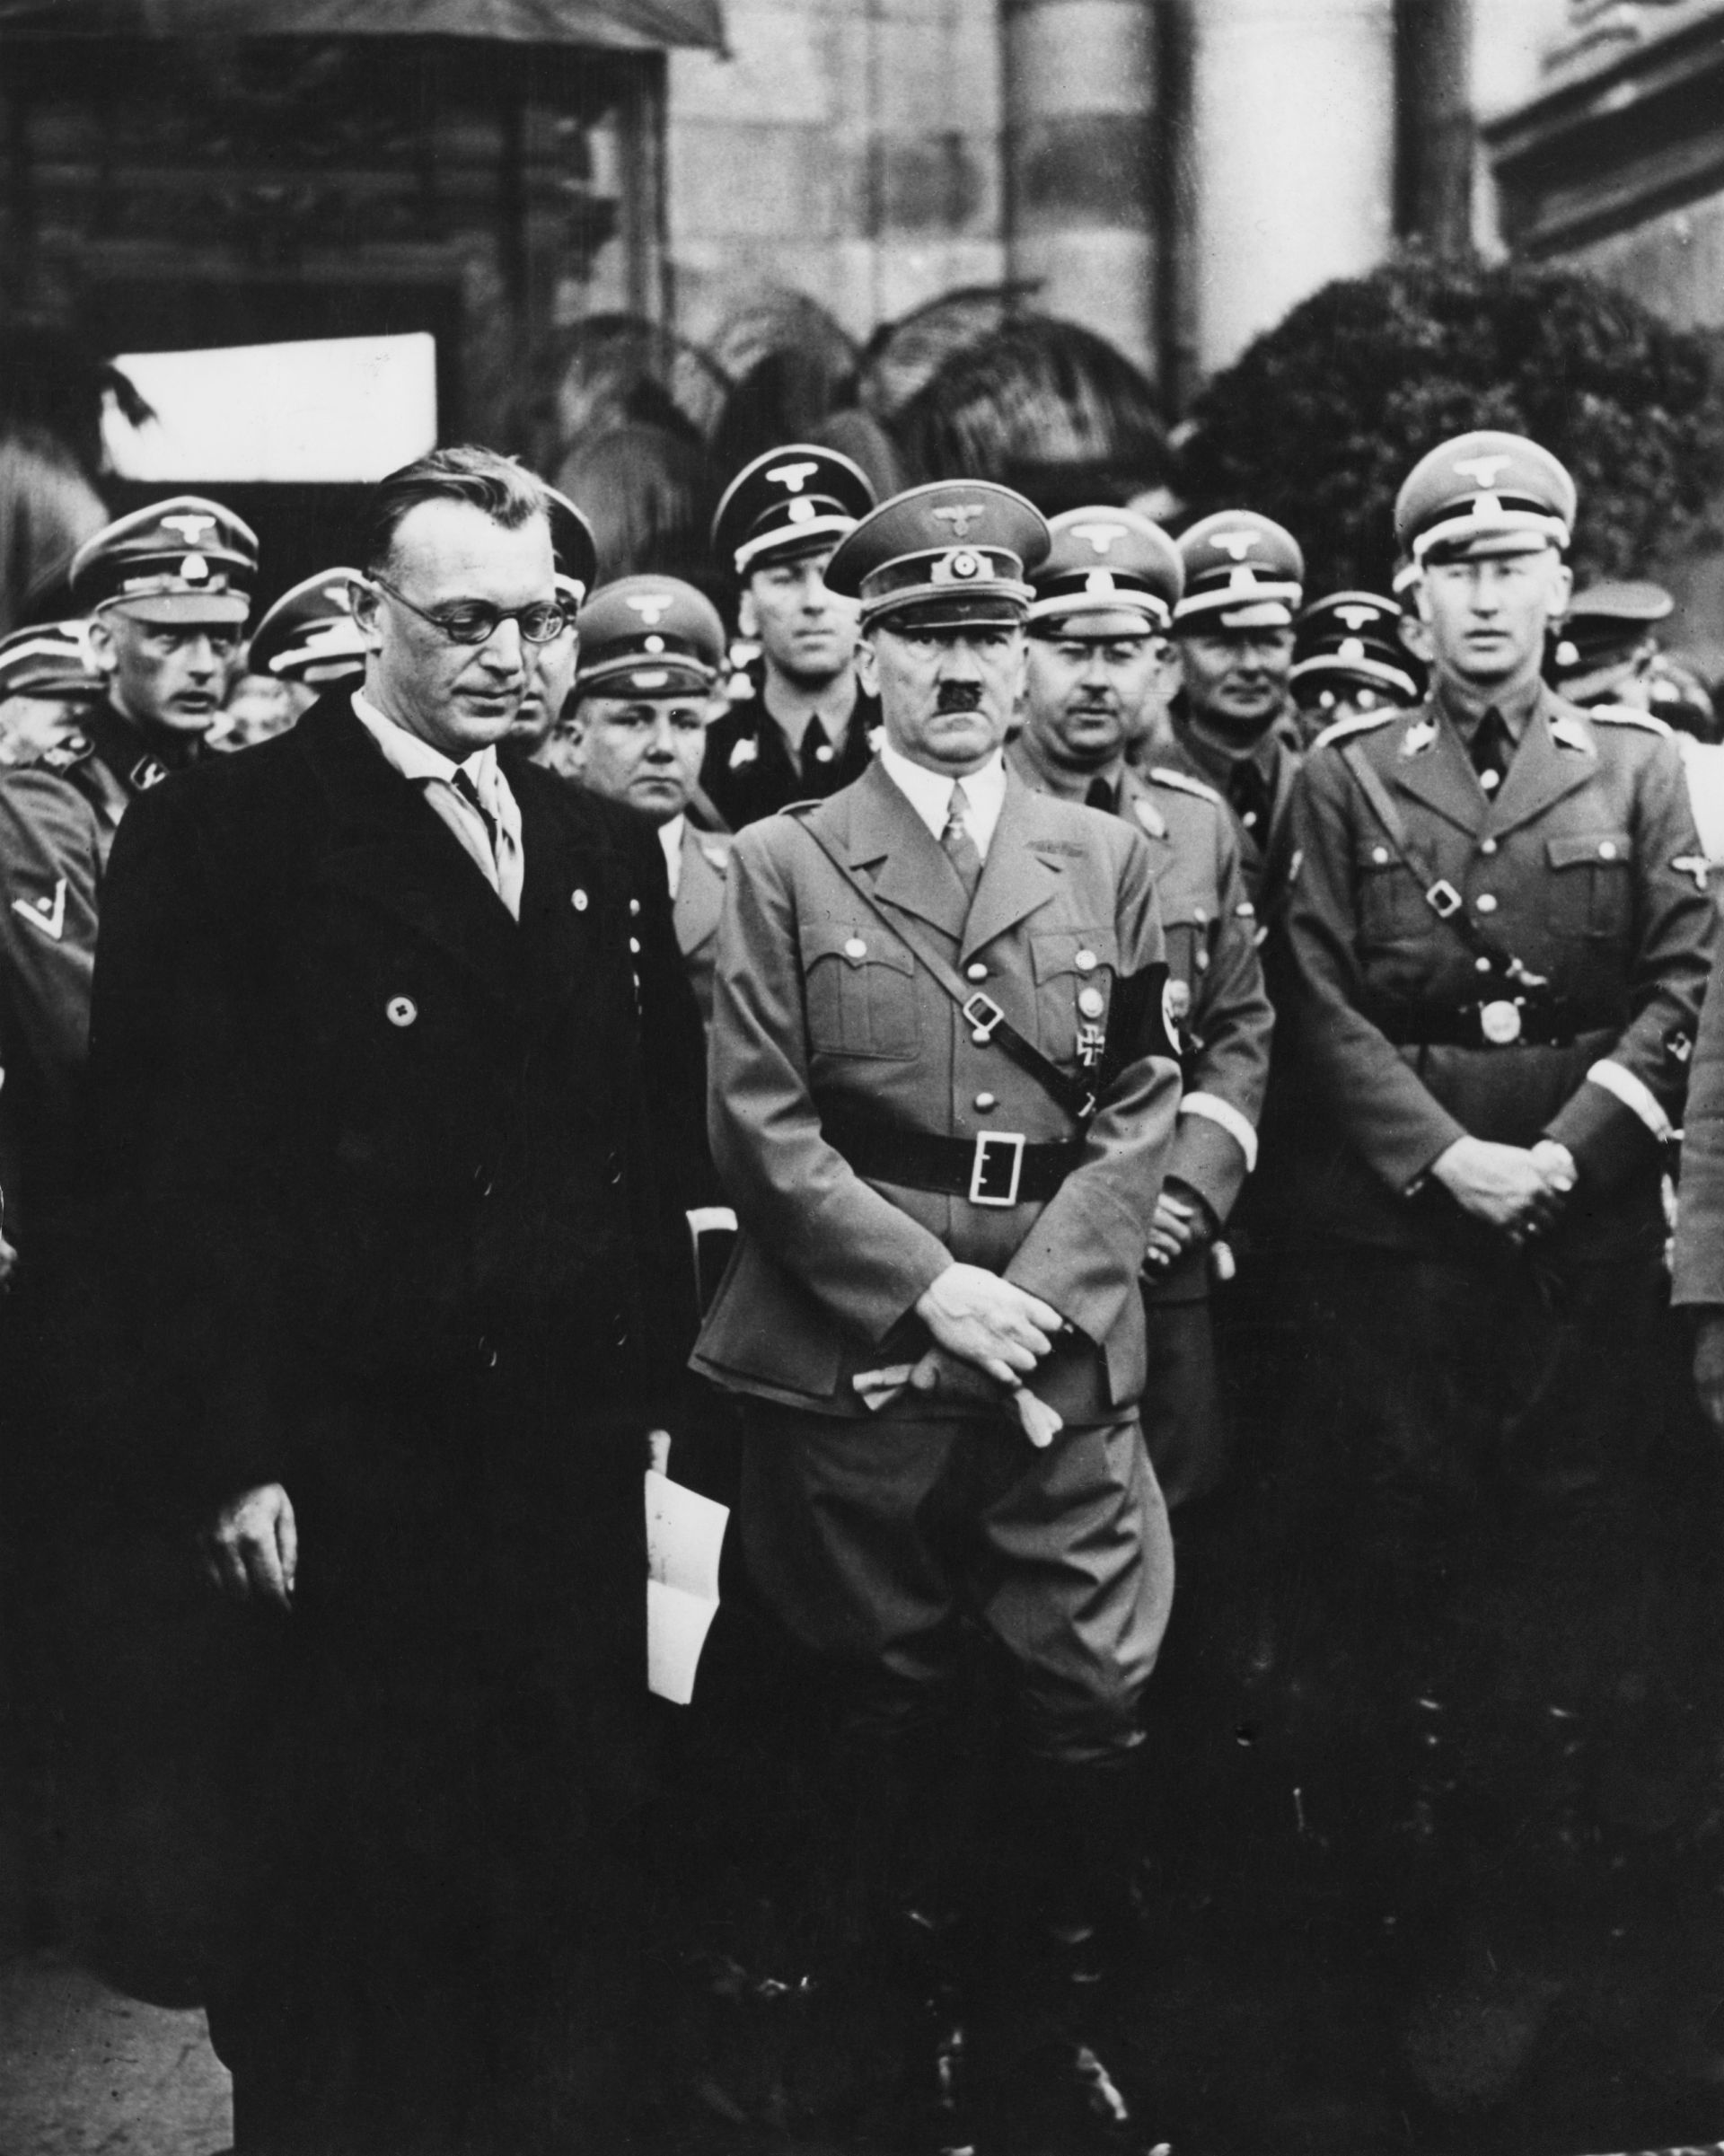 Нацистки политици: Адолф Хитлер (в средата), Хайнрих Химлер (зад него вдясно) и Райнхард Хайдрих (вдясно) 